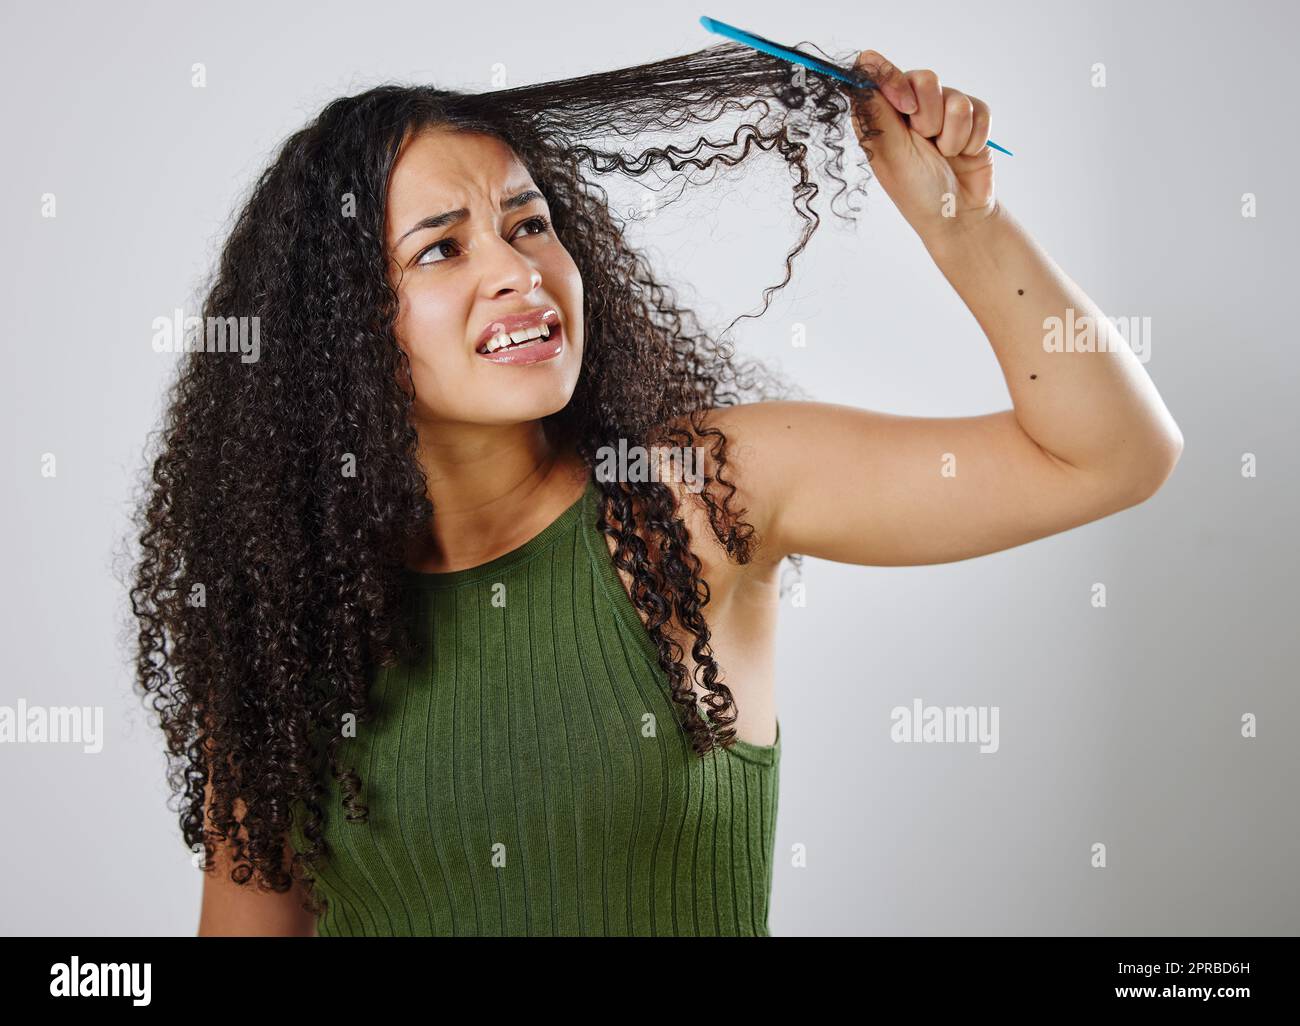 Pettinare i capelli non è mai un compito facile. Una donna accigliata mentre pettina i capelli su uno sfondo grigio. Foto Stock